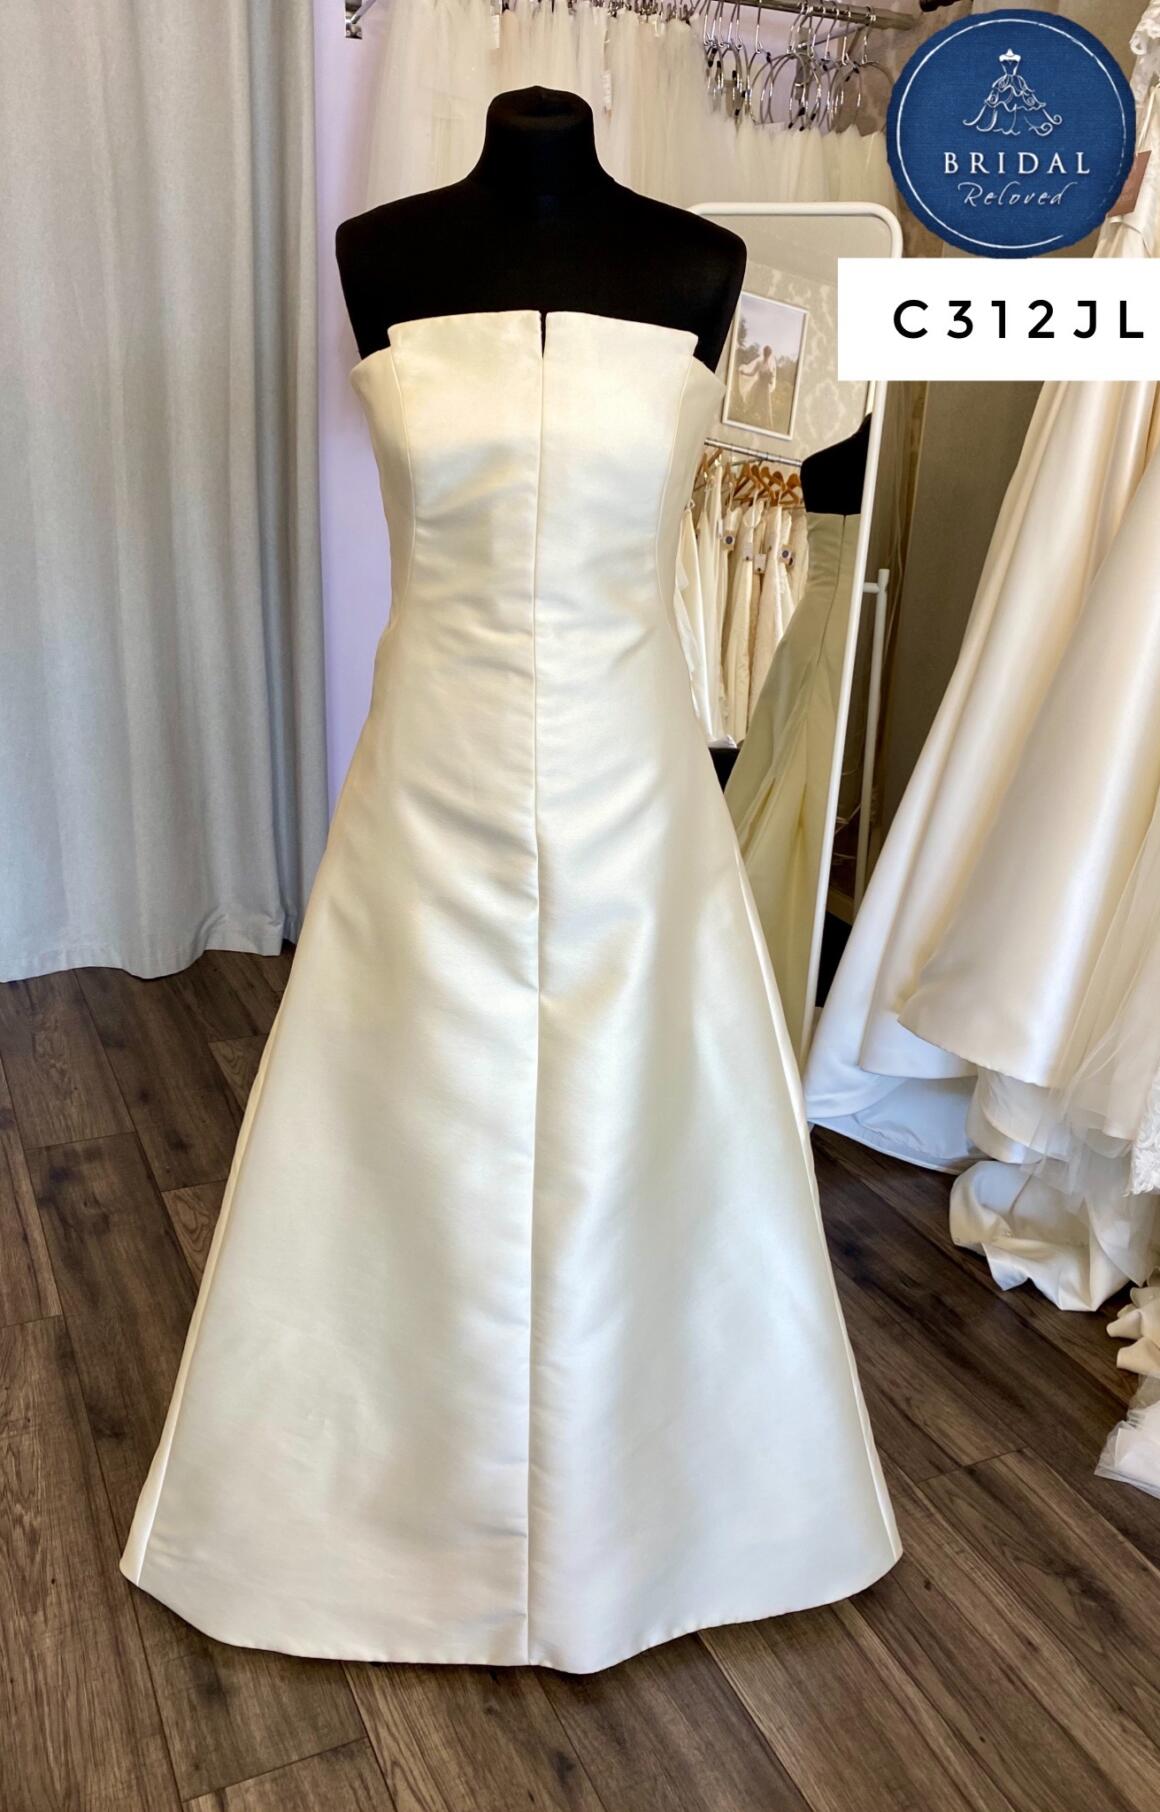 Pronovias | Wedding Dress | A Line | C312JL